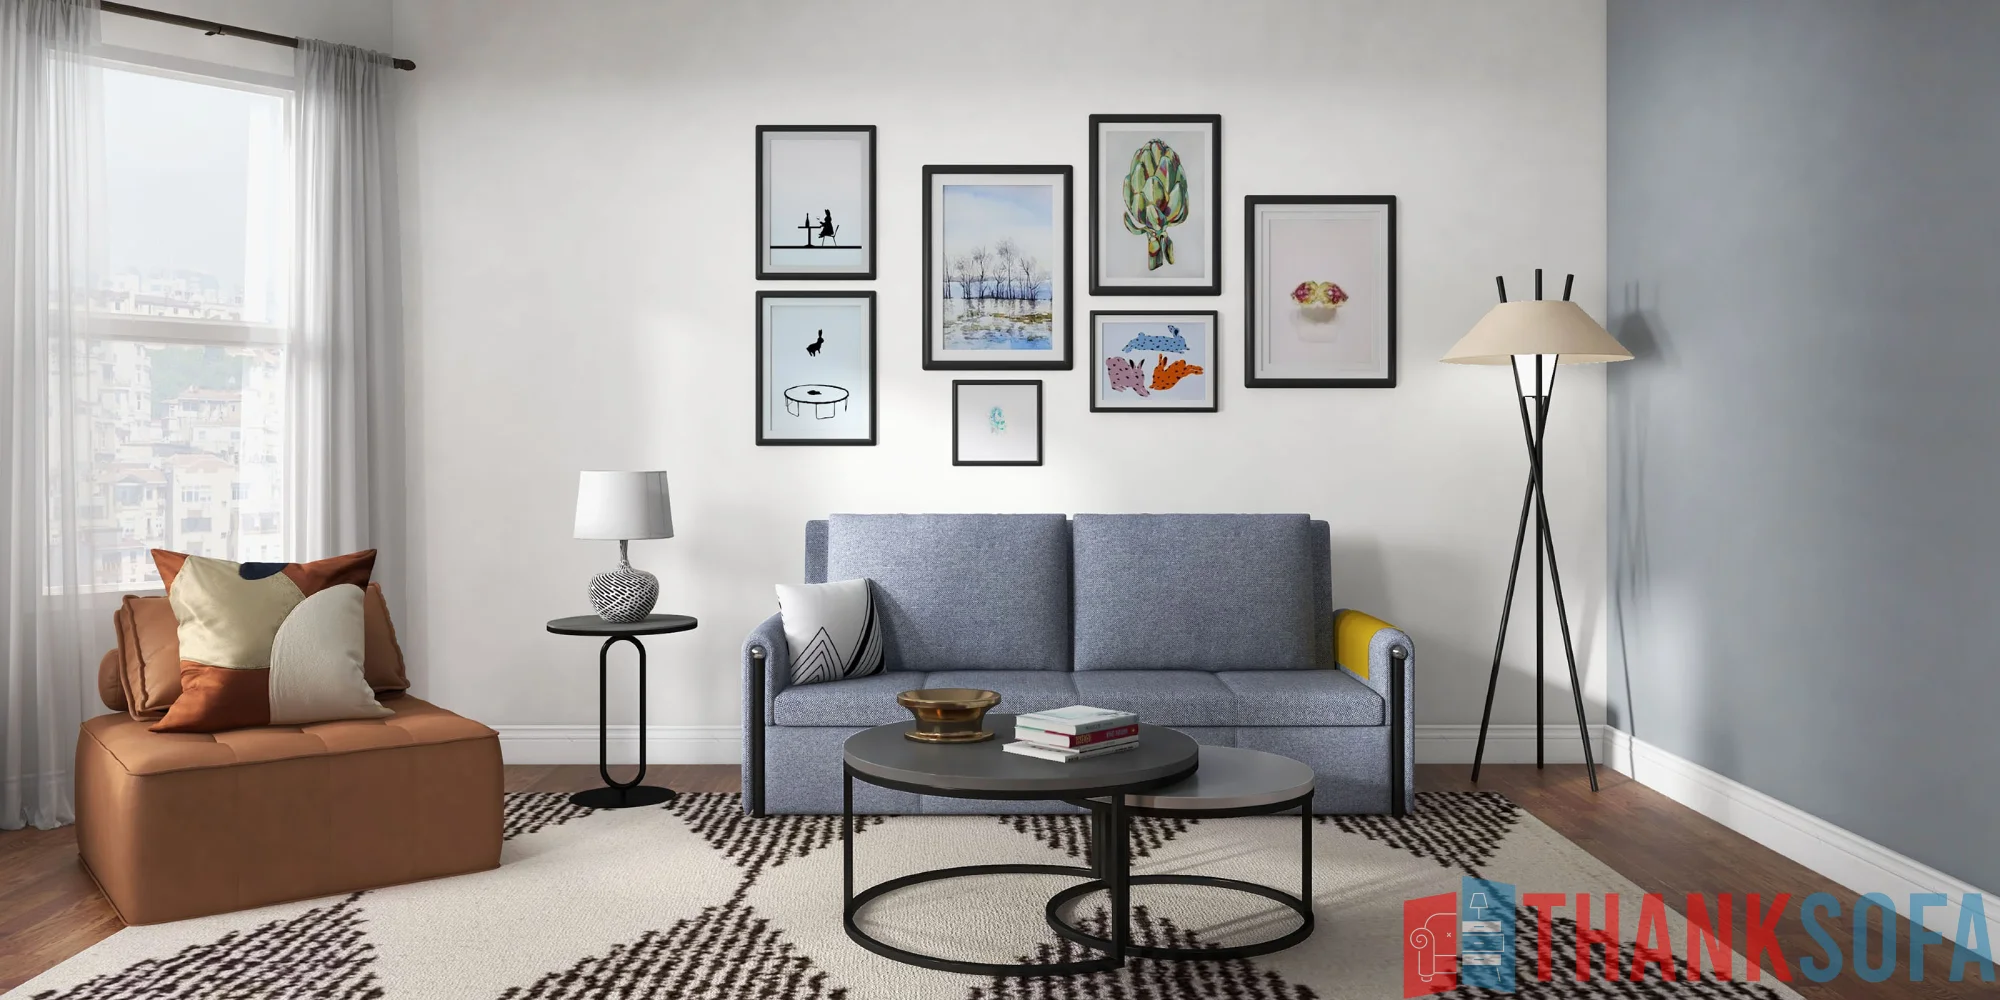 Bàn ghế sofa phòng khách đẹp - Living room sofa - ThankSofa Mẫu 35